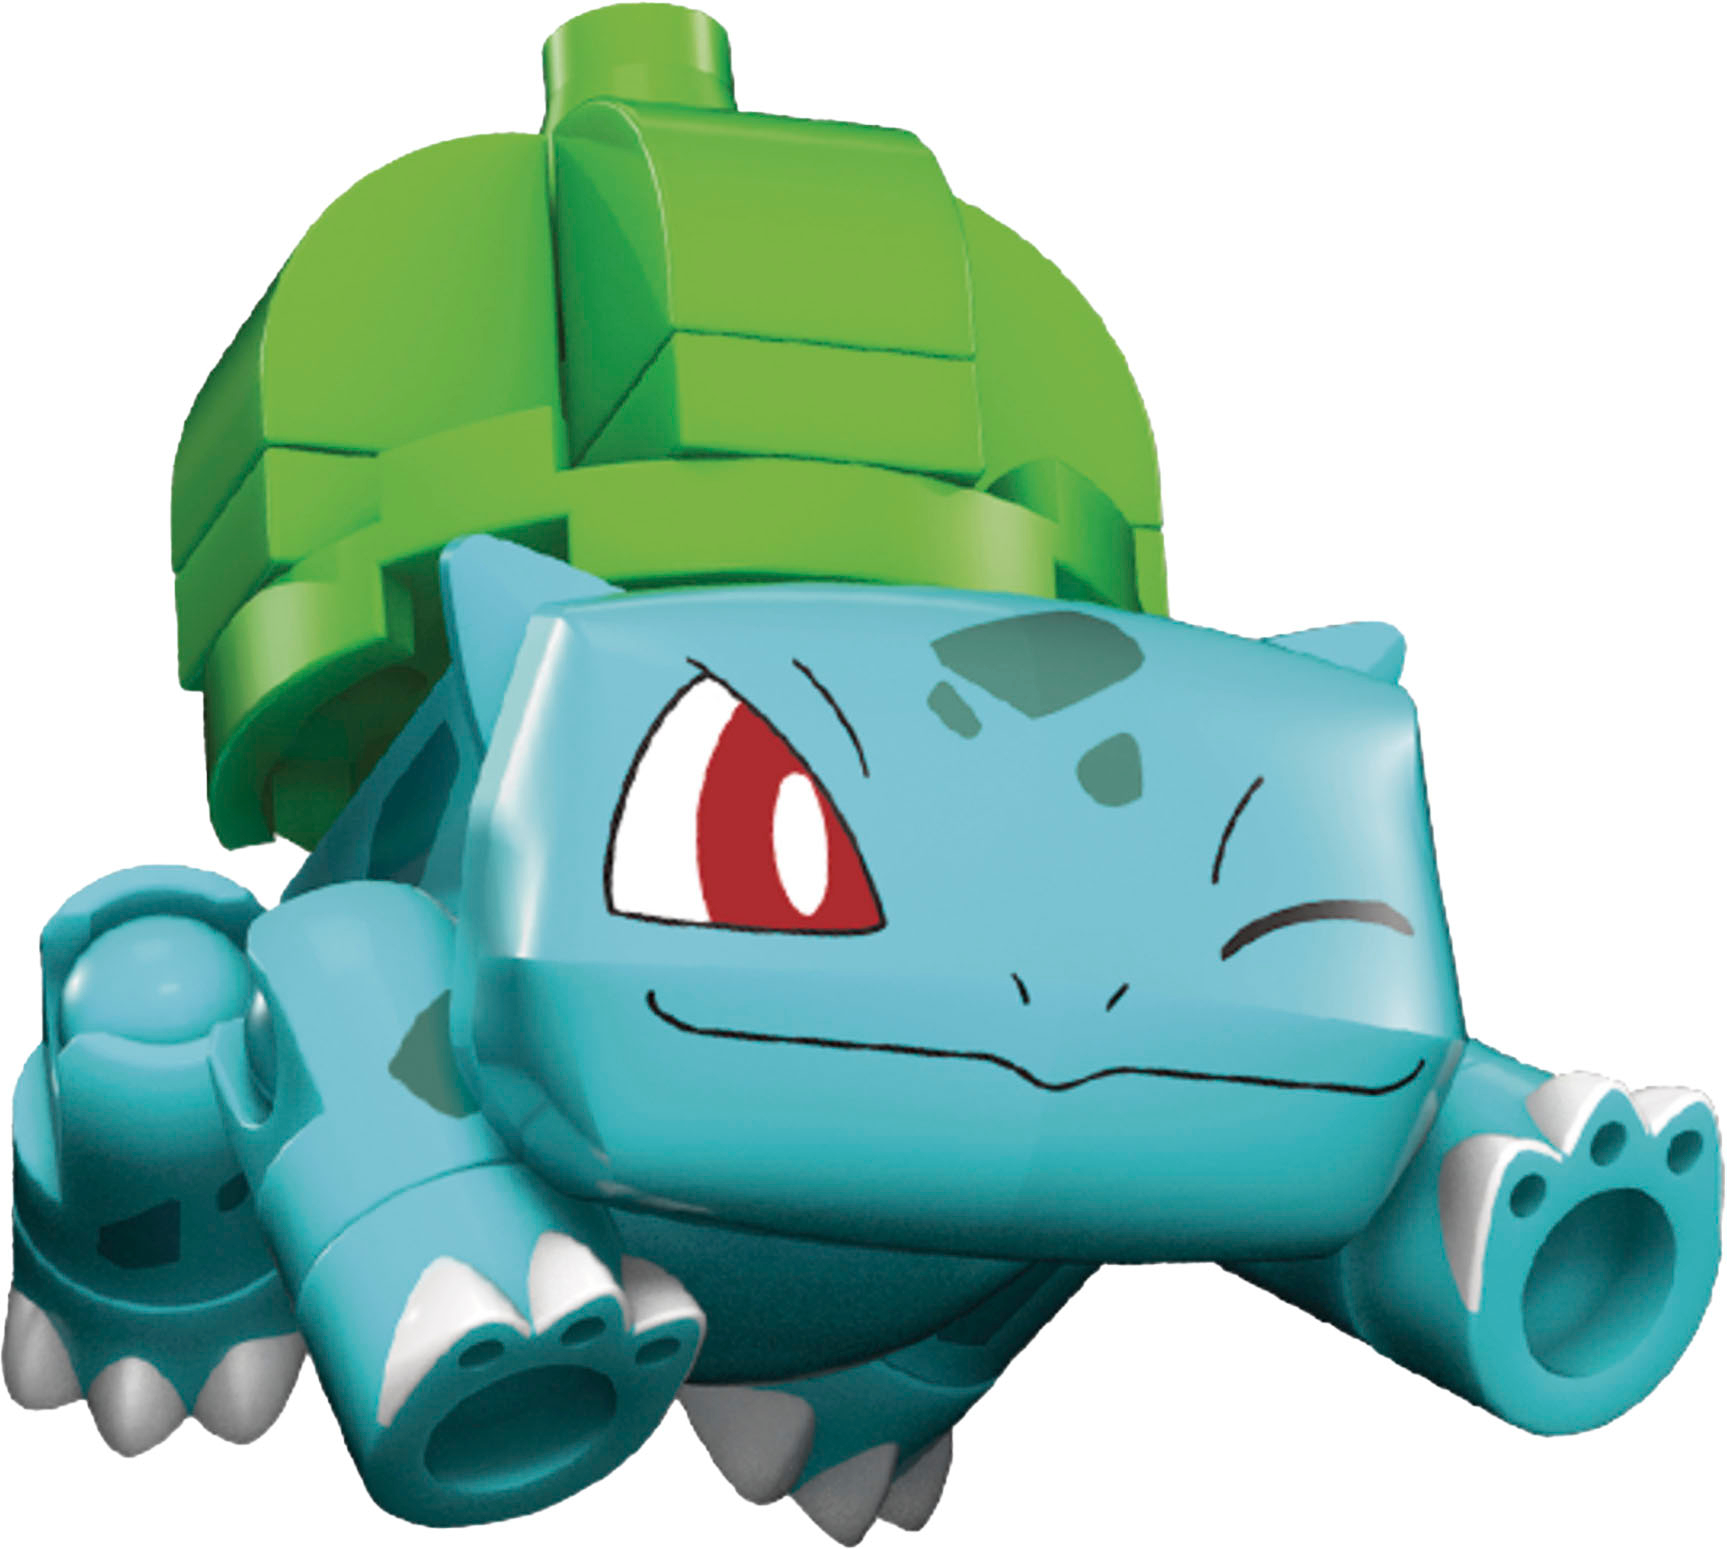 Mega Construx Pokémon Evergreen Poke Ball Assortment by Mattel